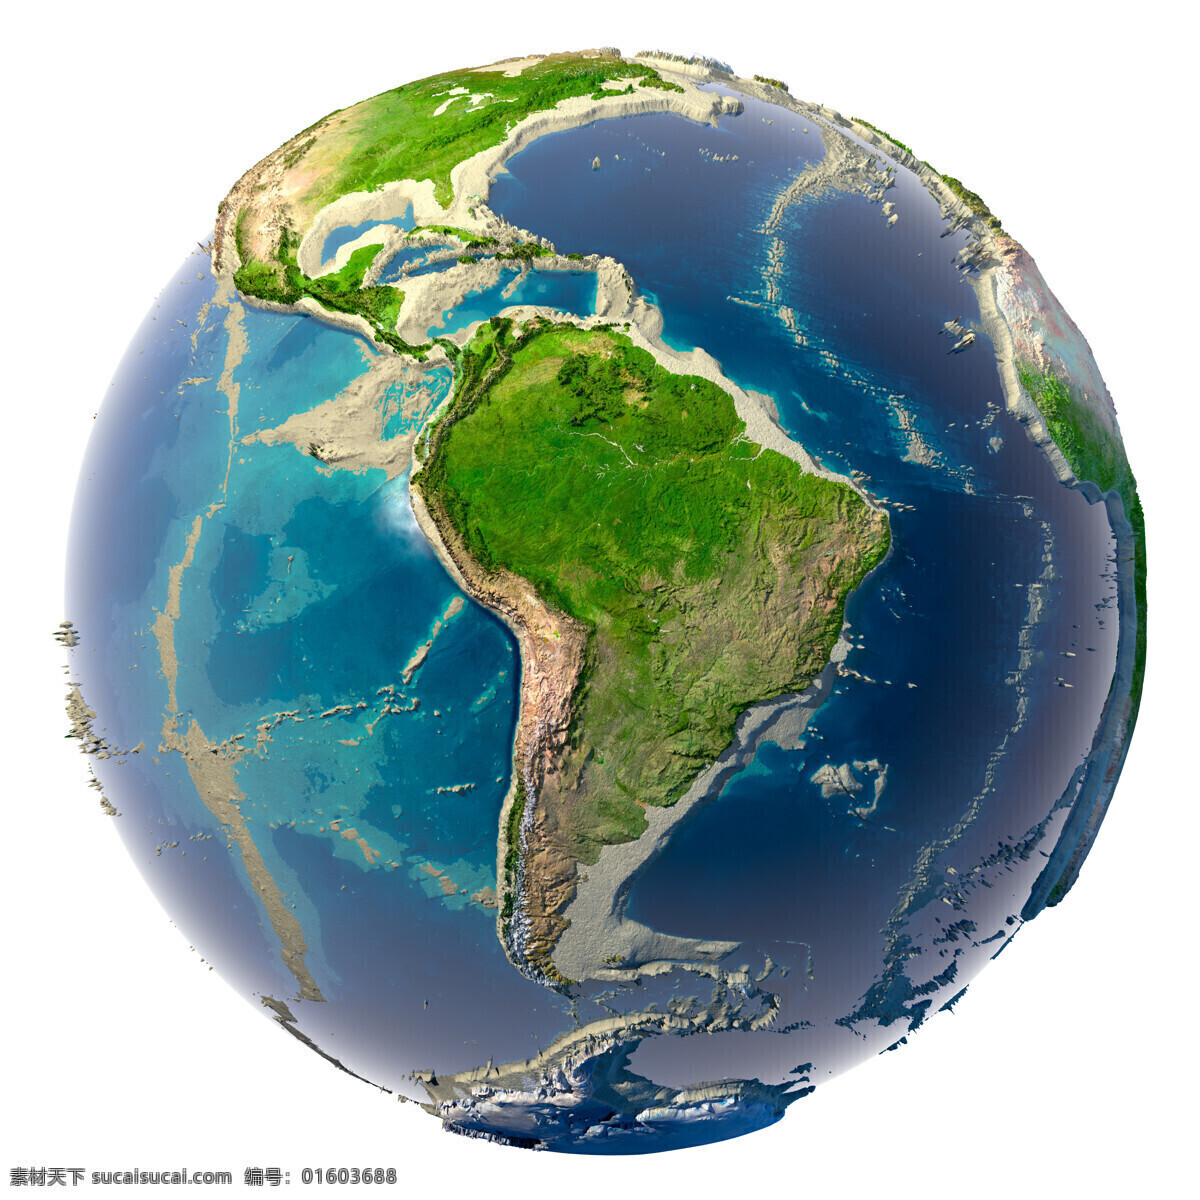 地球形象图 地球 绿色 大陆 海洋 蓝色地球 保护 环境 生态 资源 其他类别 生活百科 白色